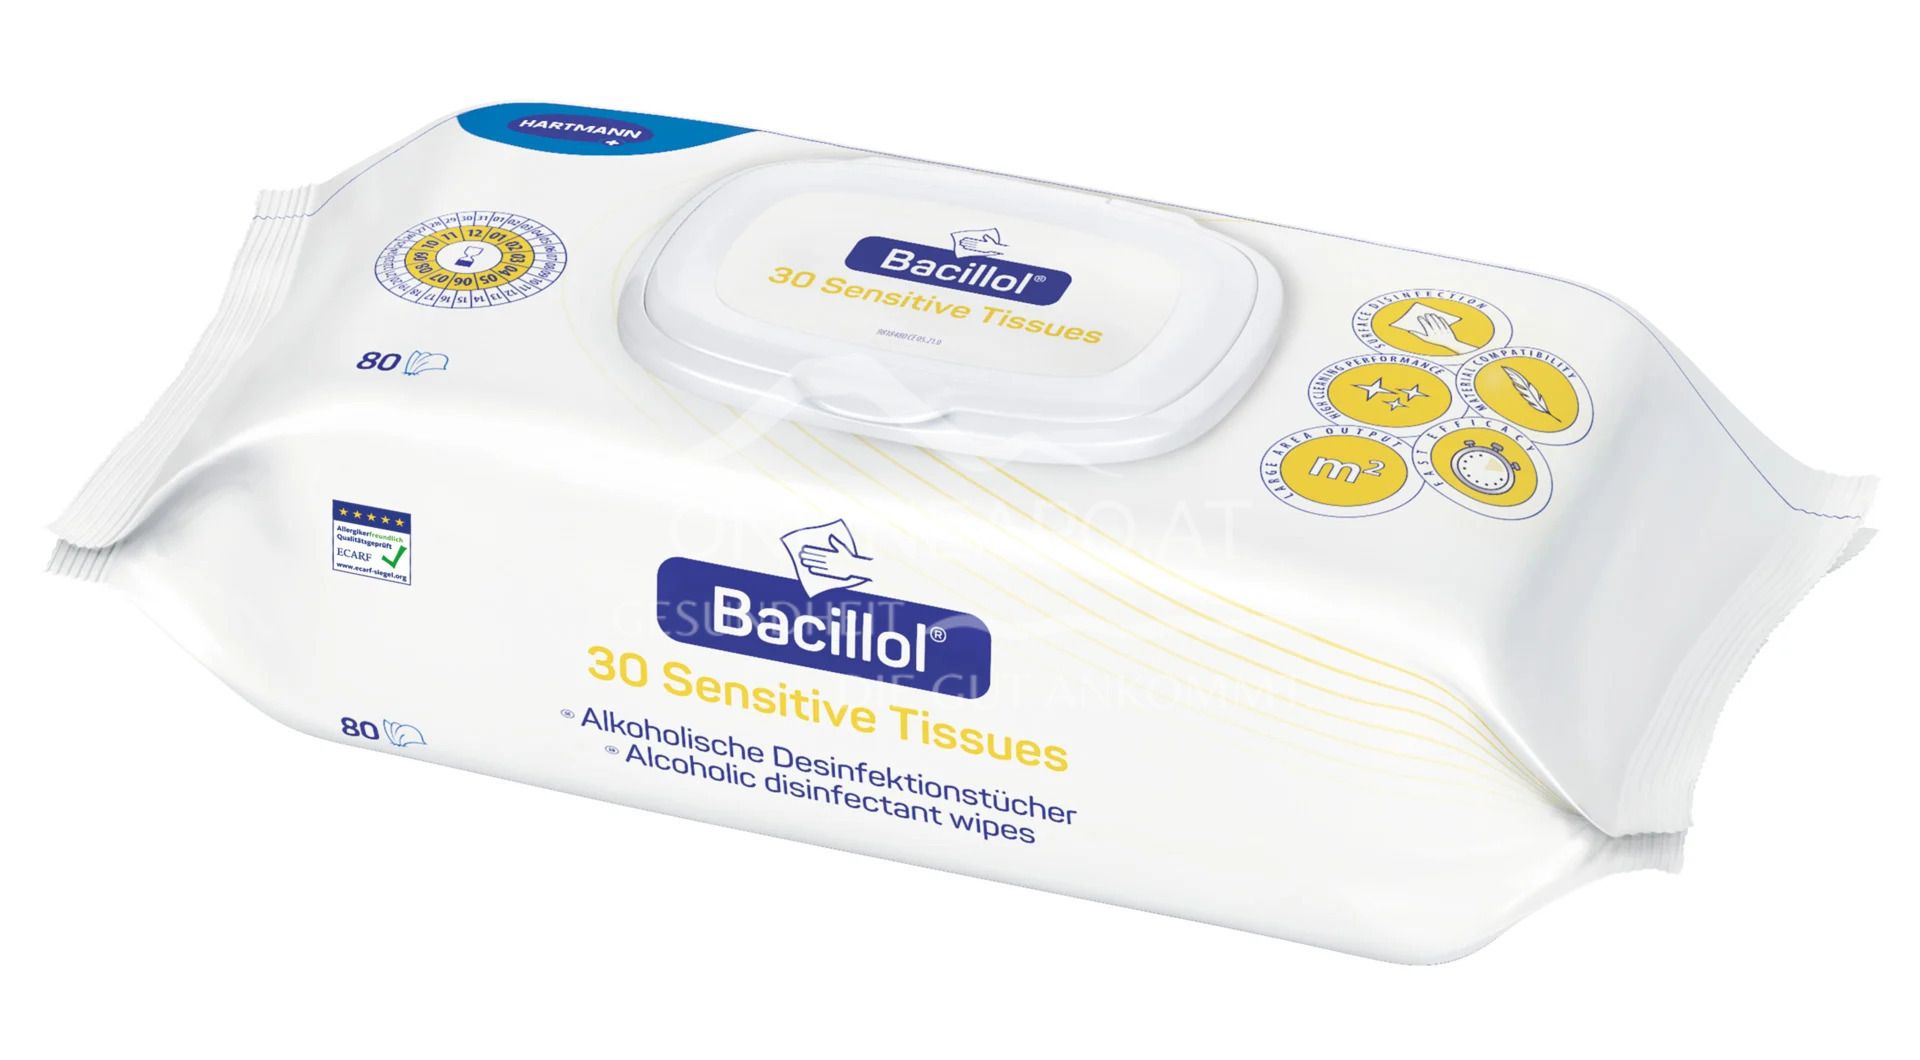 Bacillol® 30 Sensitive Tissues - Alkoholische Desinfektionstücher